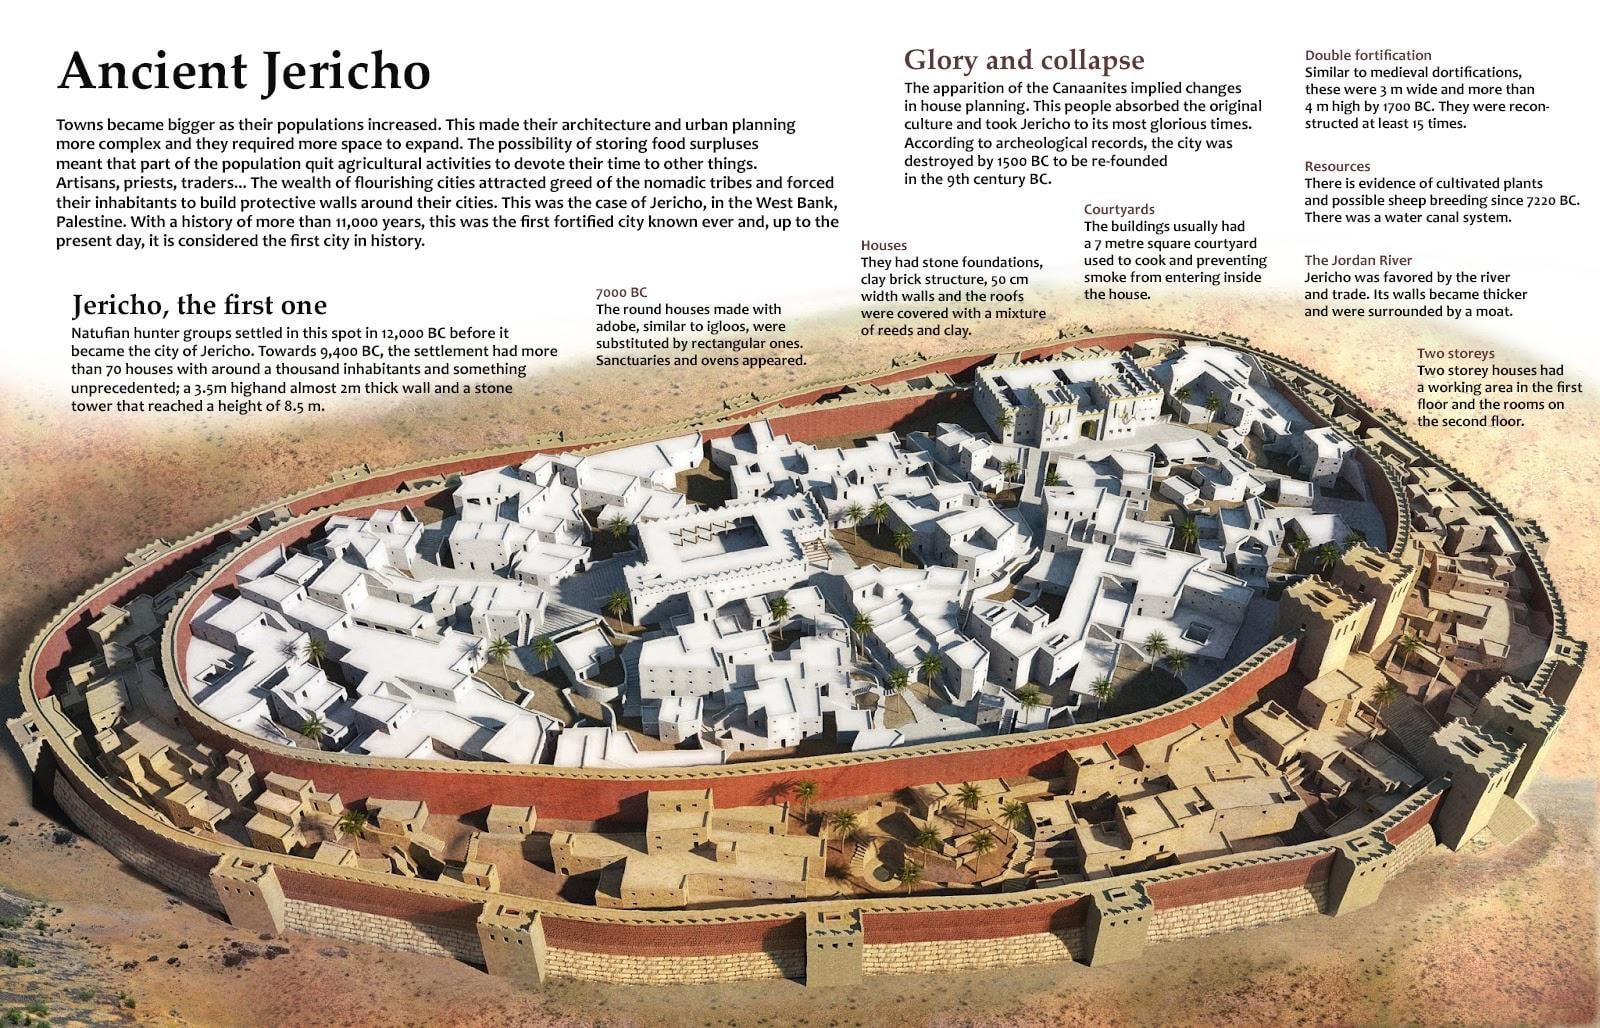 Jericho ວັດ​ຖຸ​ບູ​ຮານ: ເມືອງ​ທີ່​ມີ​ກໍາ​ແພງ​ຫີນ​ທີ່​ເກົ່າ​ແກ່​ທີ່​ສຸດ​ຂອງ​ໂລກ​ແມ່ນ 5500 ປີ​ເກົ່າ​ແກ່​ກ​່​ວາ pyramids 1.